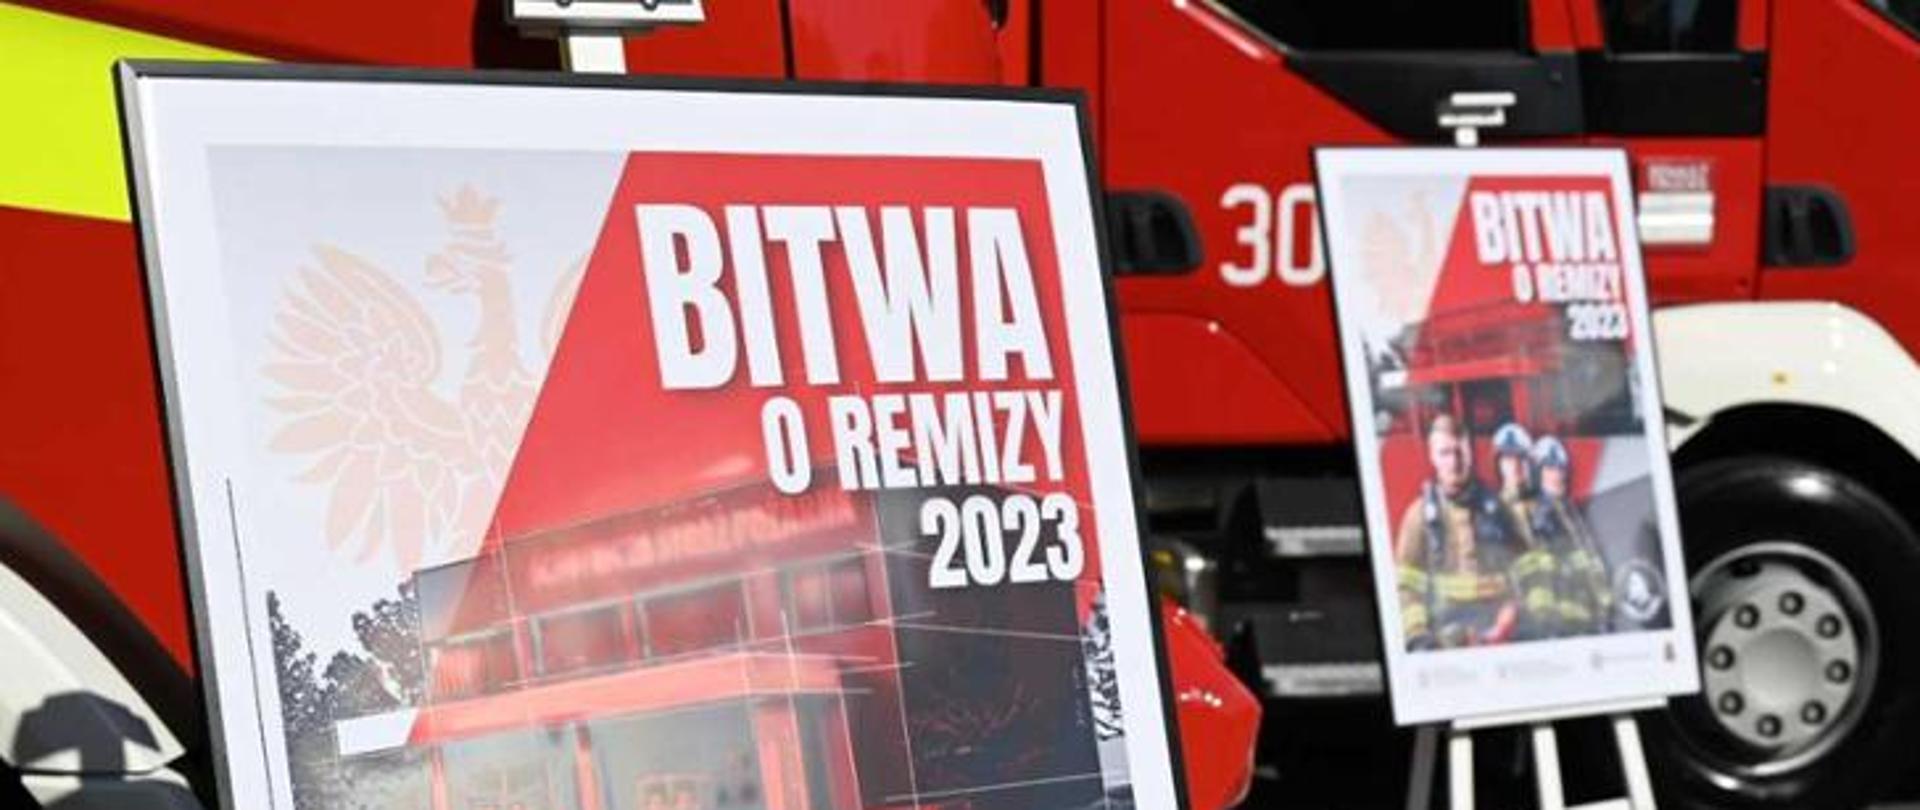 Na pierwszym planie 2 plakaty z napisem "Bitwa o remizy 2023". W tle samochody strażackie.